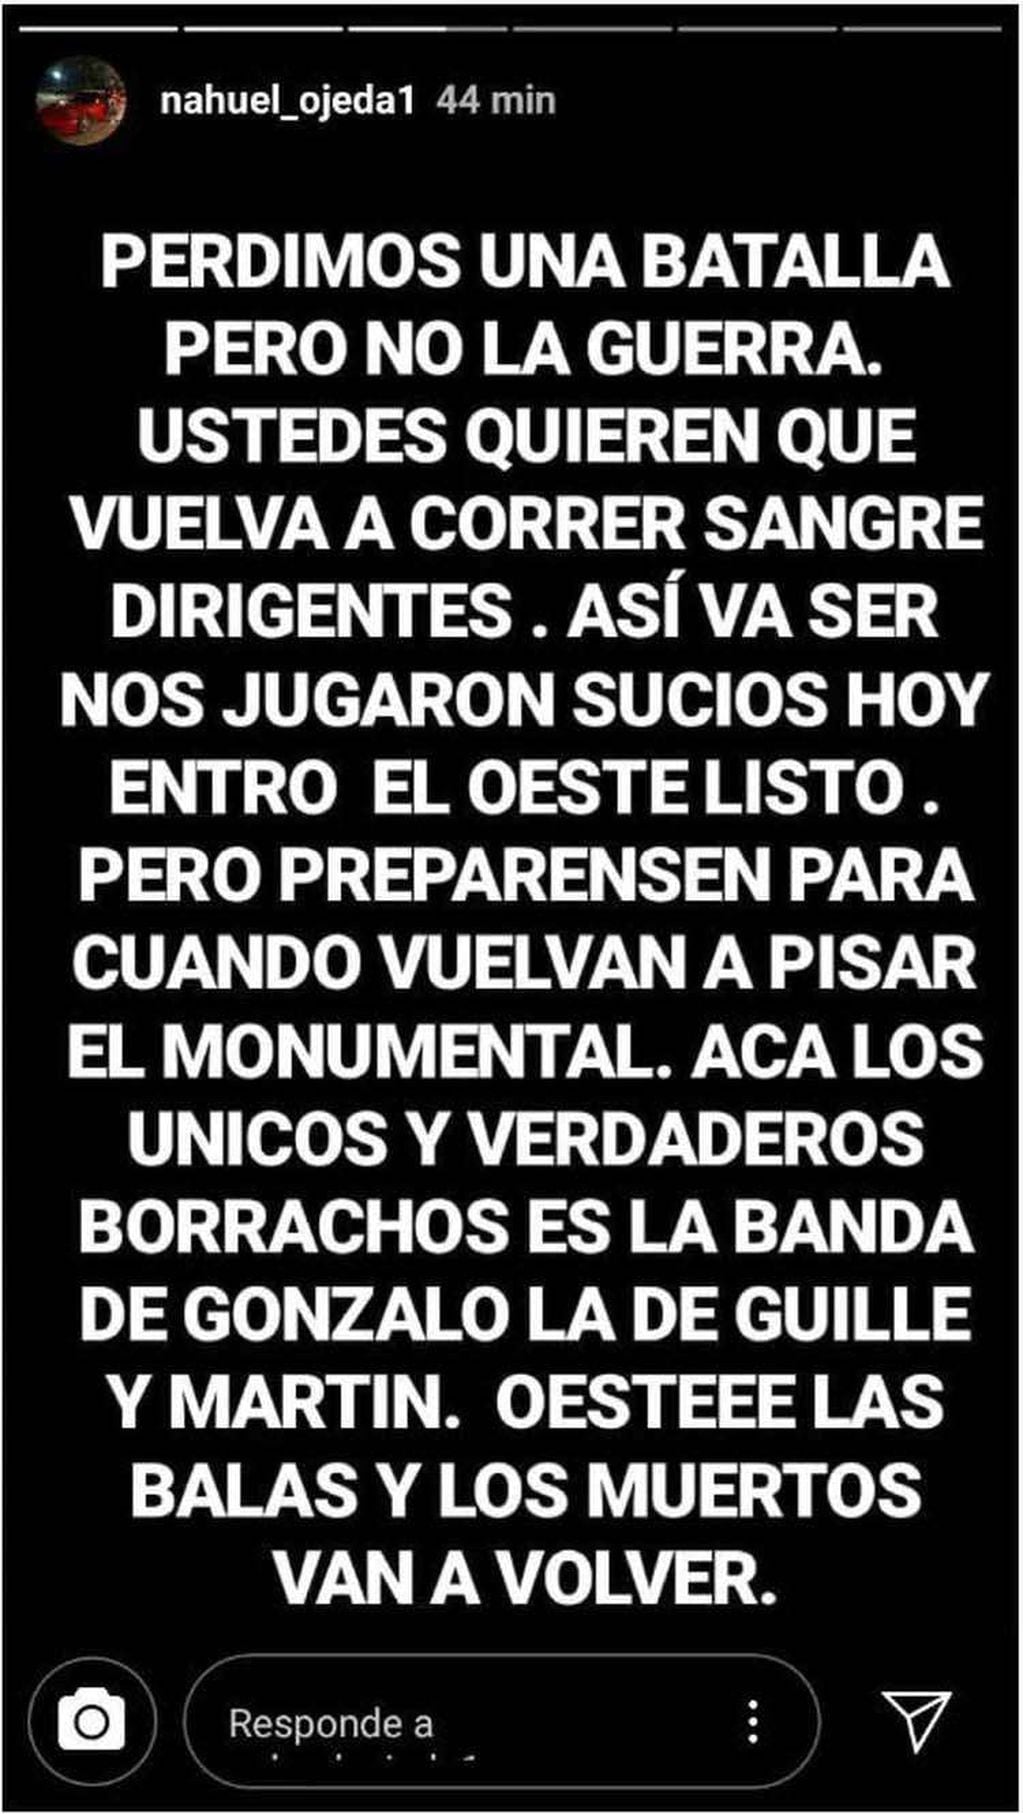 
Violento. El mensaje que prendió las alarmas en Núñez. | Gentileza
   